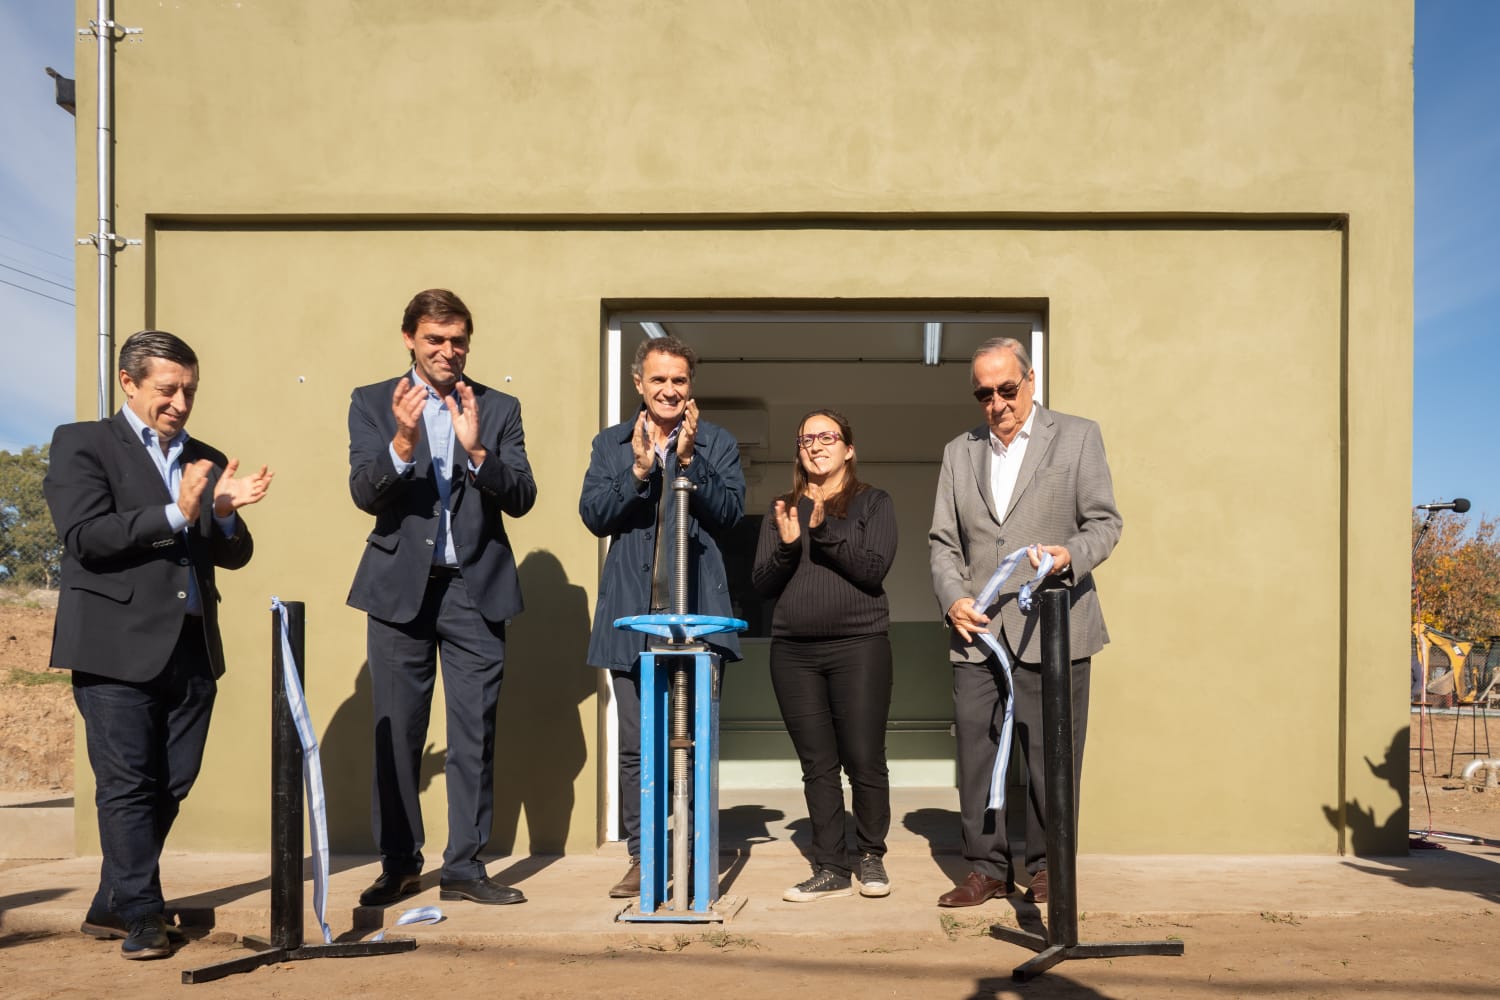 Se inauguró la Cisterna de La Movediza, una obra que salda una deuda histórica con los vecinos y duplicará la capacidad de distribución de agua potable